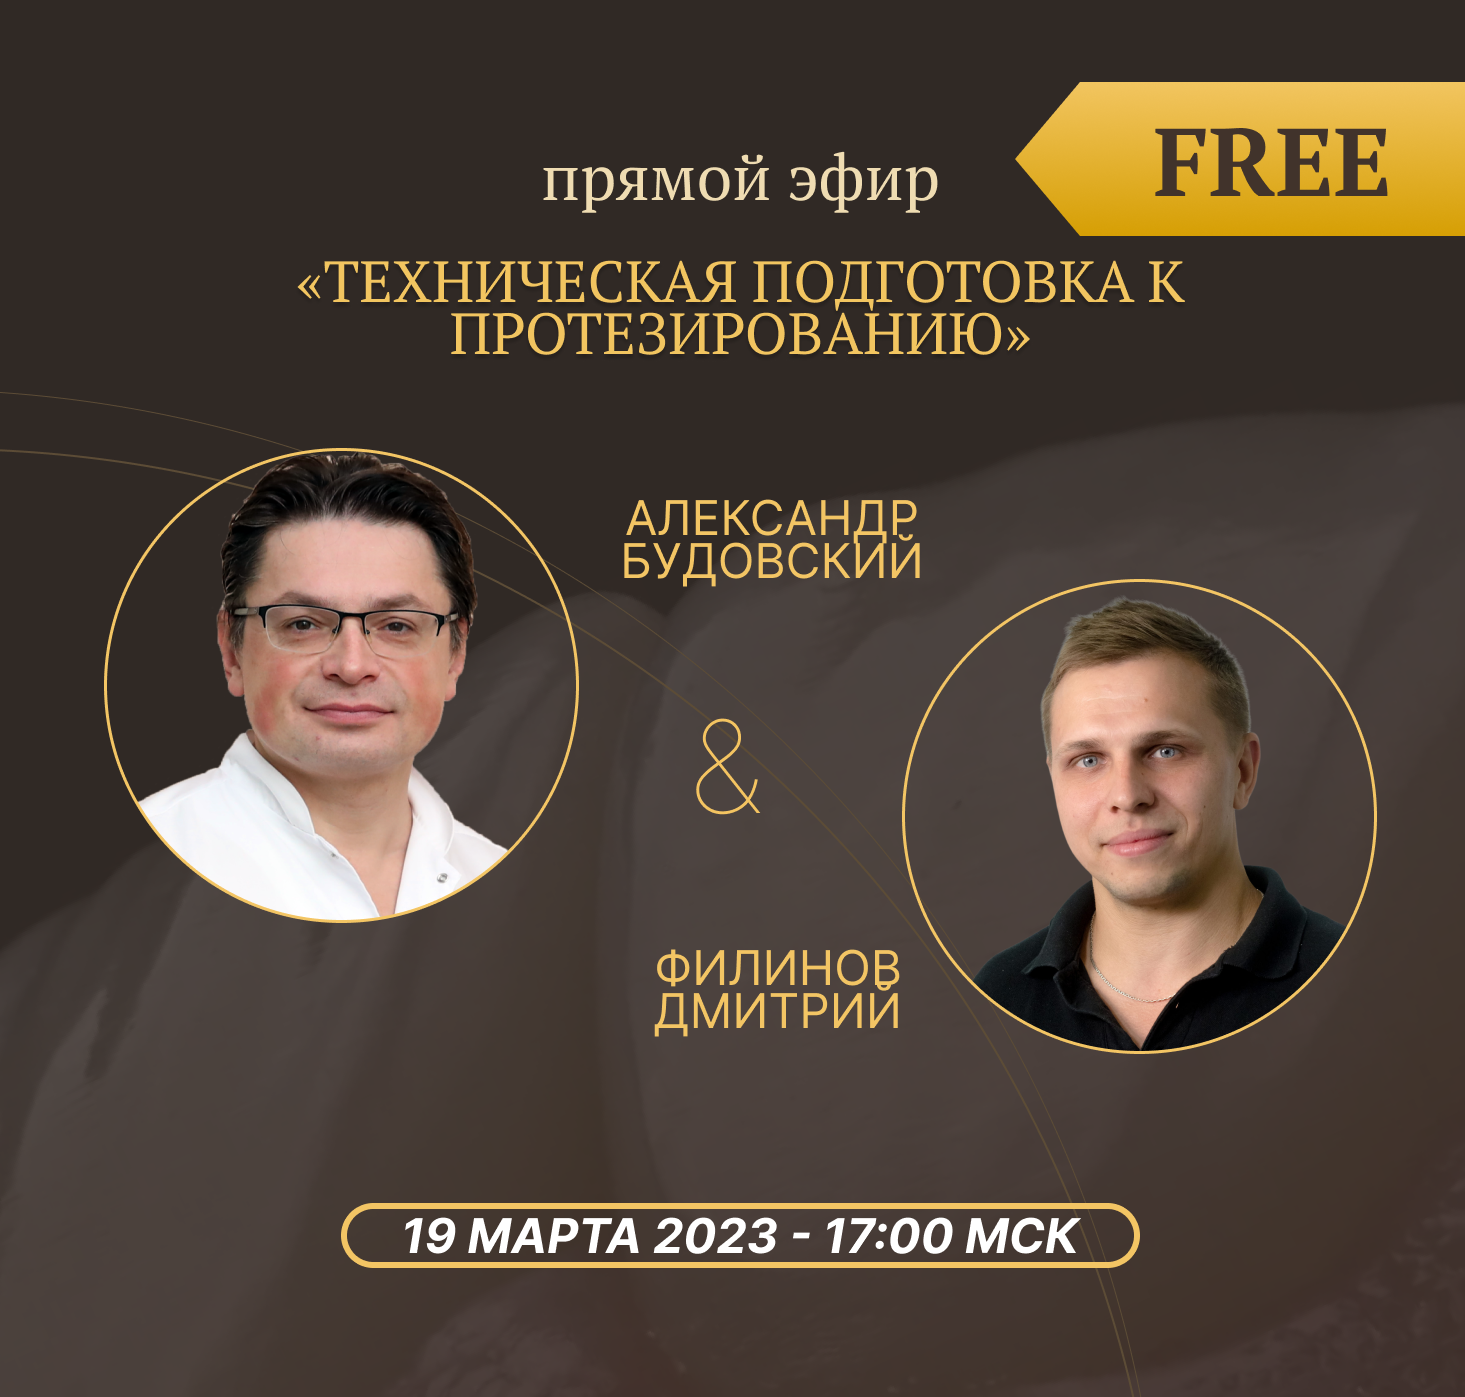 Дмитрий Филинов и Александр Будовский: «Техническая подготовка к протезированию» 